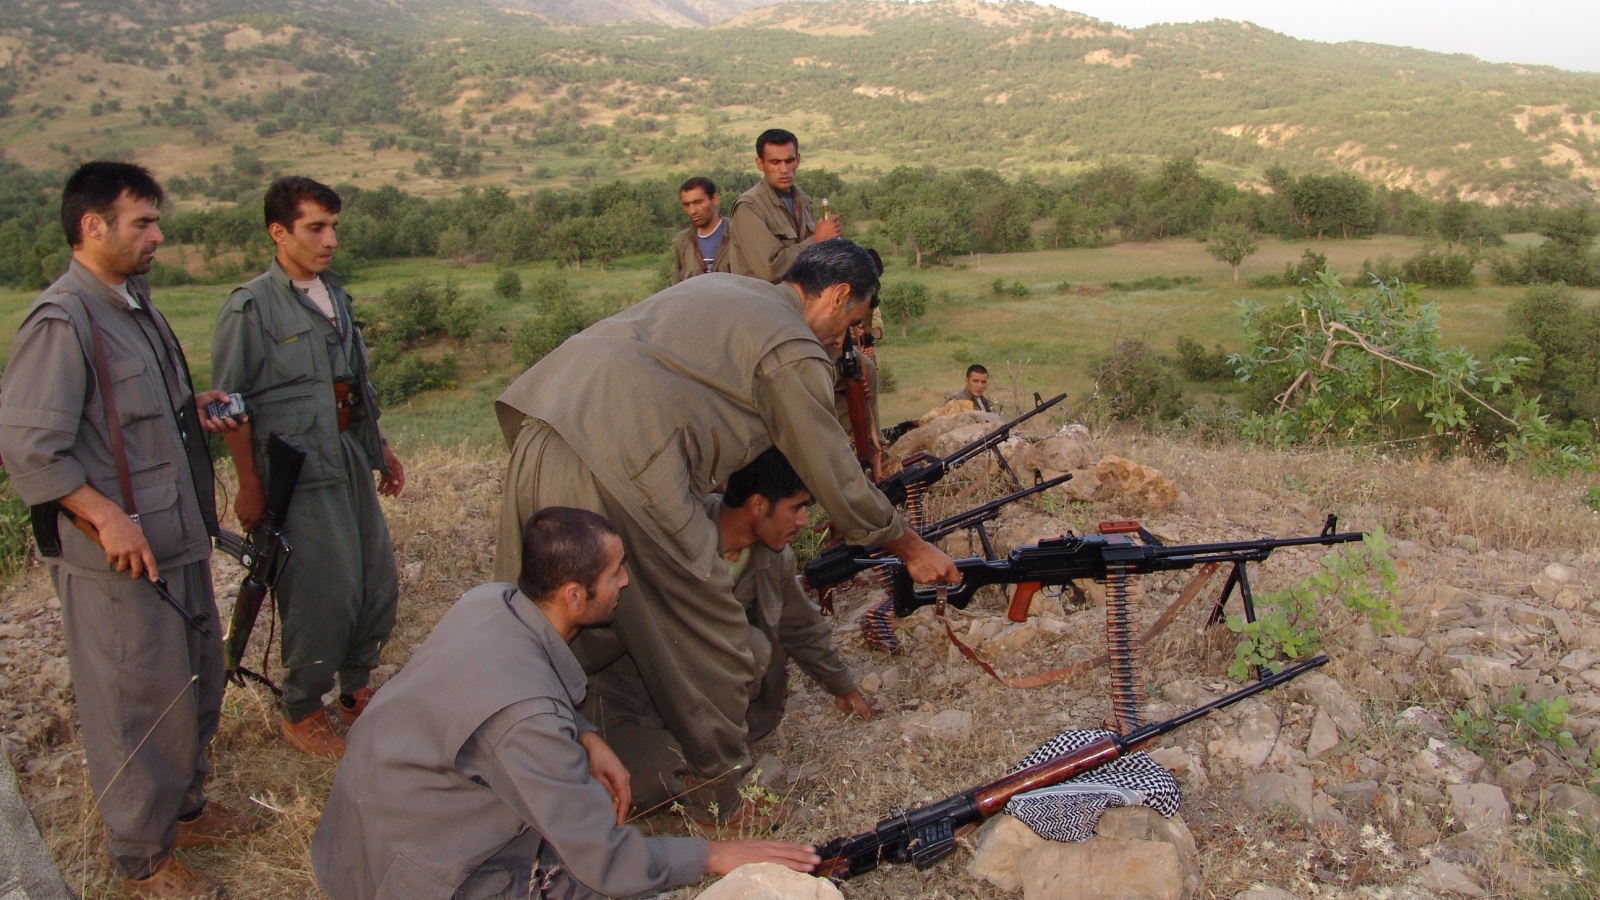 ‪مقاتلون من حزب العمال الكردستاني يدربون مليشيا قريبة منه في سنجار شمالي العراق (الجزيرة)‬ مقاتلون من حزب العمال الكردستاني يدربون مليشيا قريبة منه في سنجار شمالي العراق (الجزيرة)